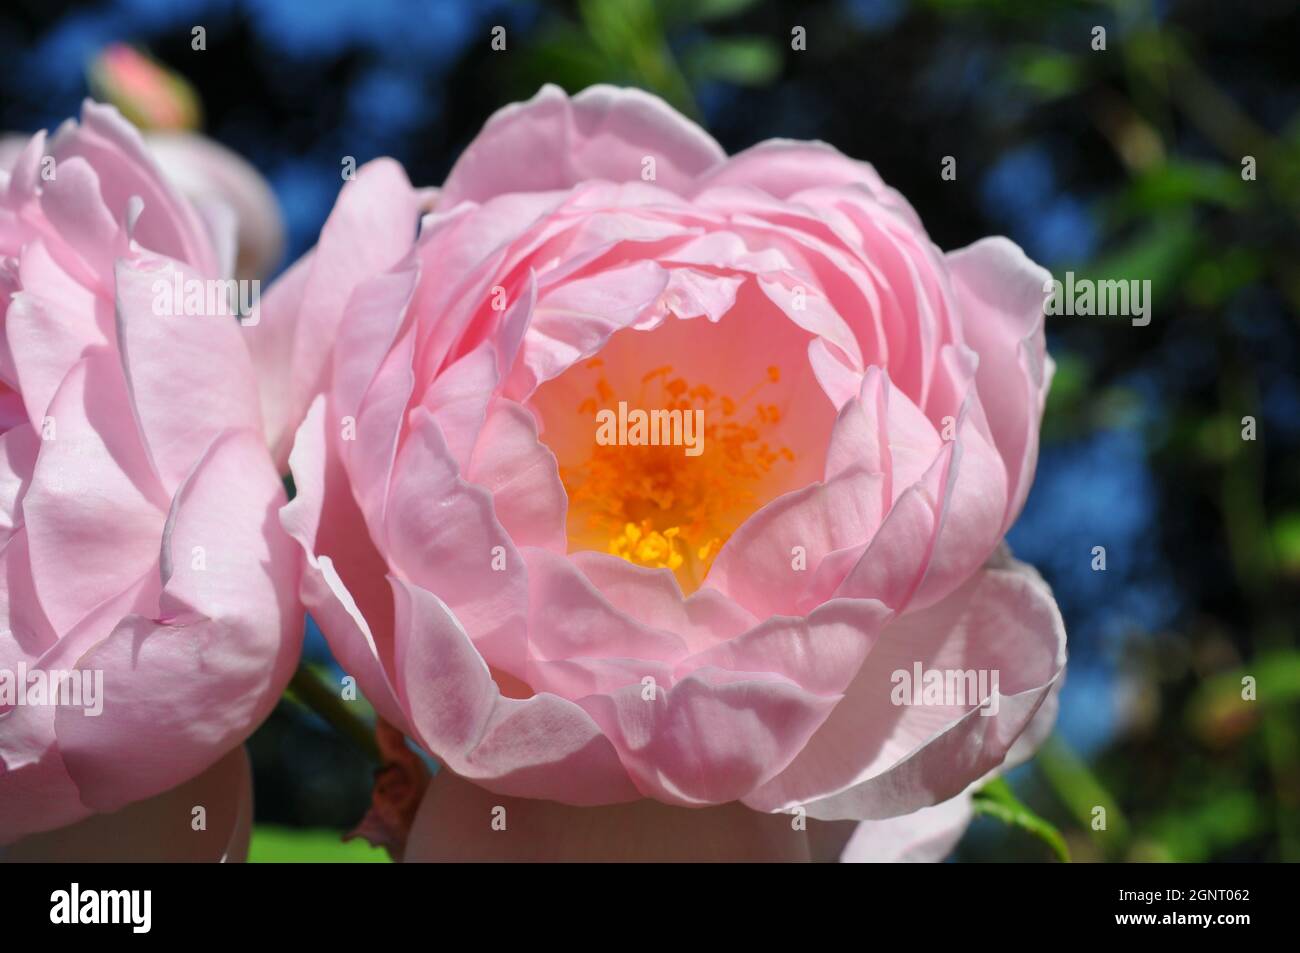 detailaufnahme rosa pastellfarbe blüte se levantó mit biene Foto de stock